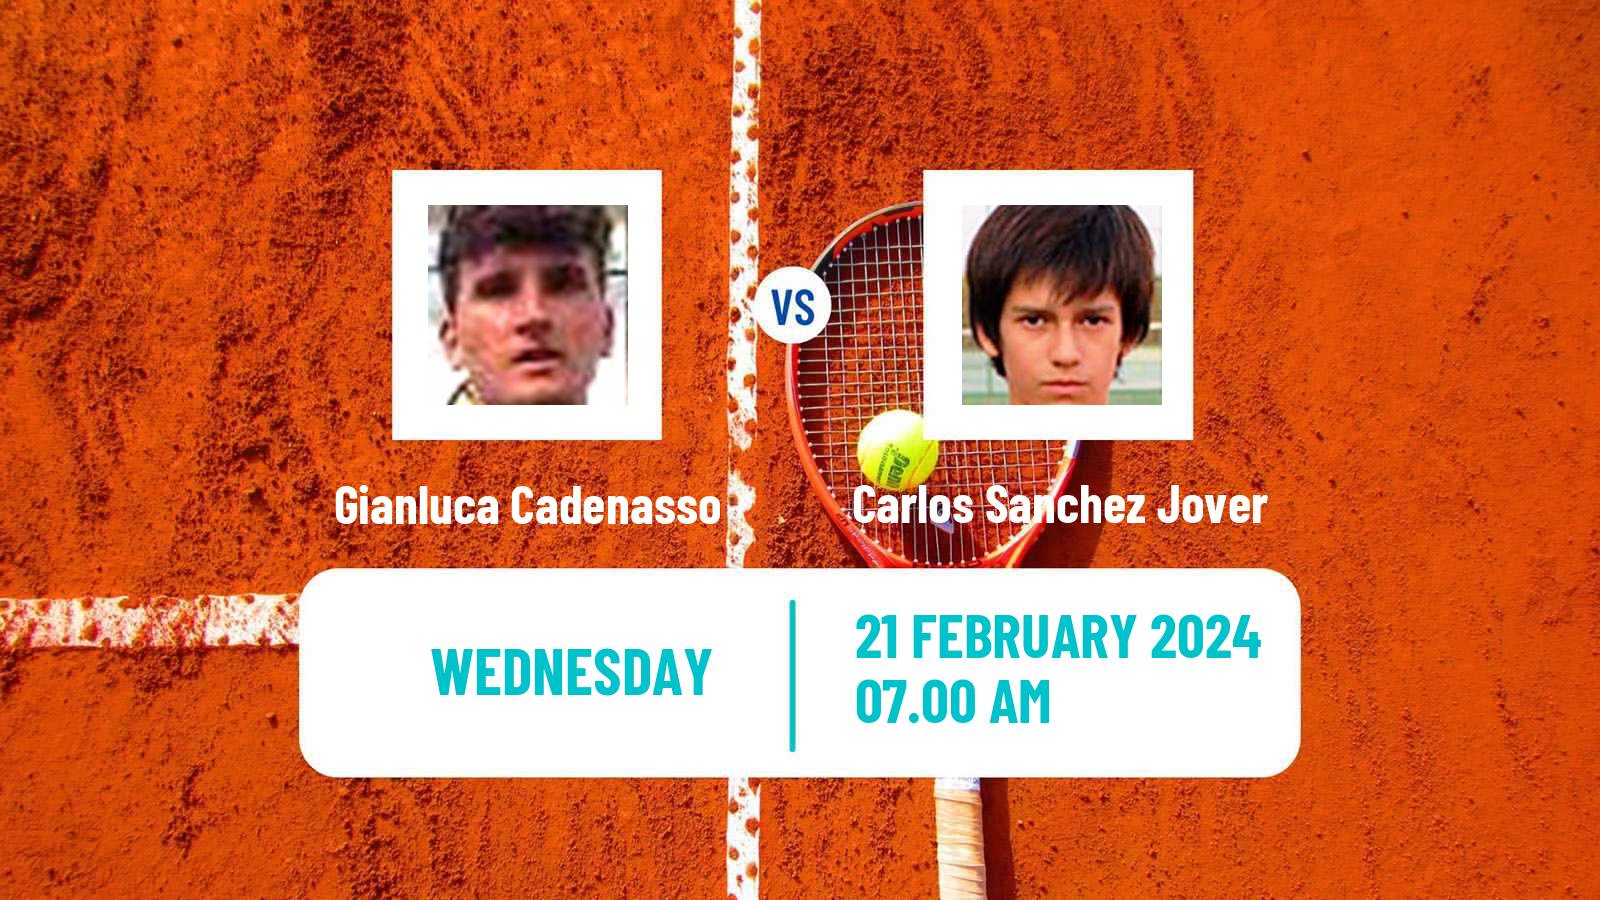 Tennis ITF M25 Hammamet 4 Men Gianluca Cadenasso - Carlos Sanchez Jover